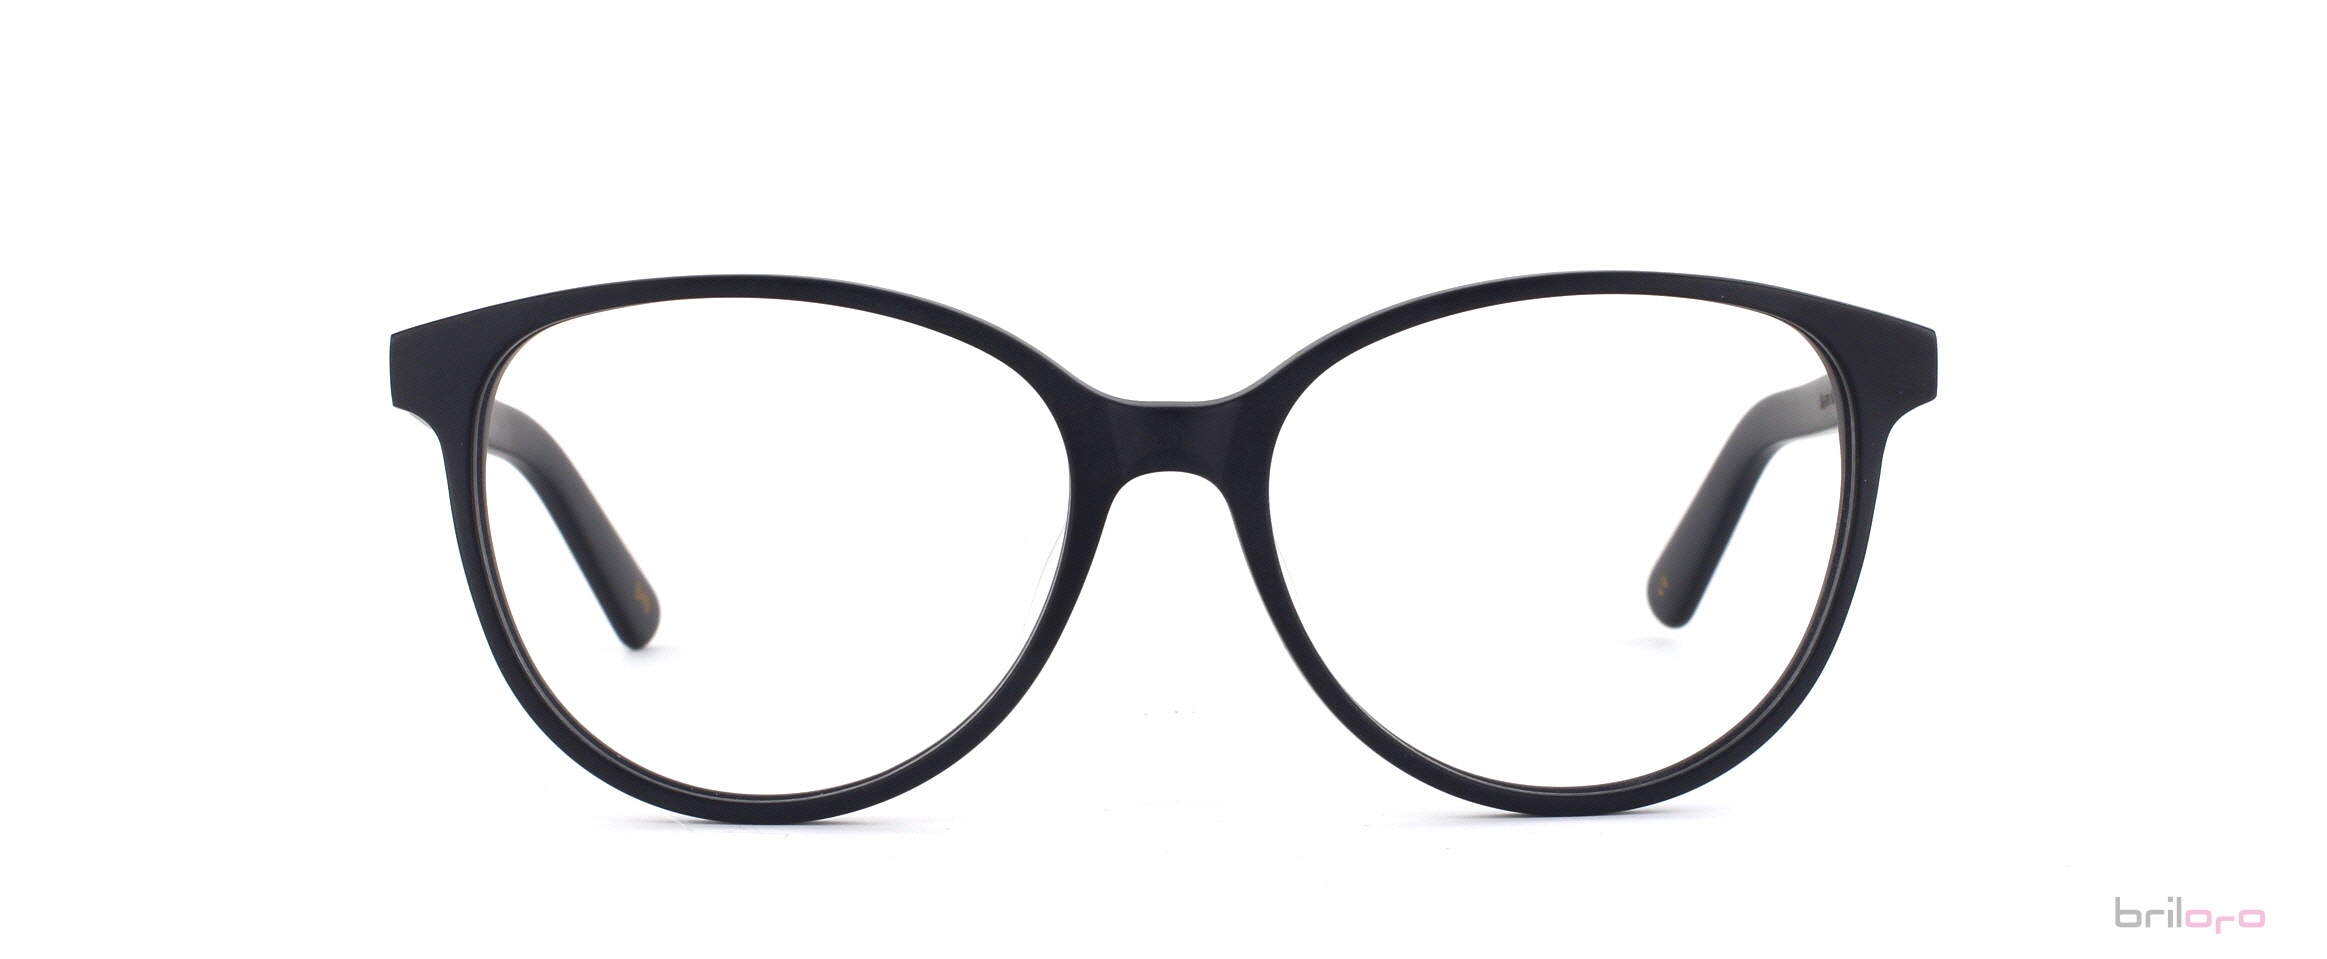 Nazario Italian Black Brille für runde Gesichter exklusiv bei Briloro kaufen!